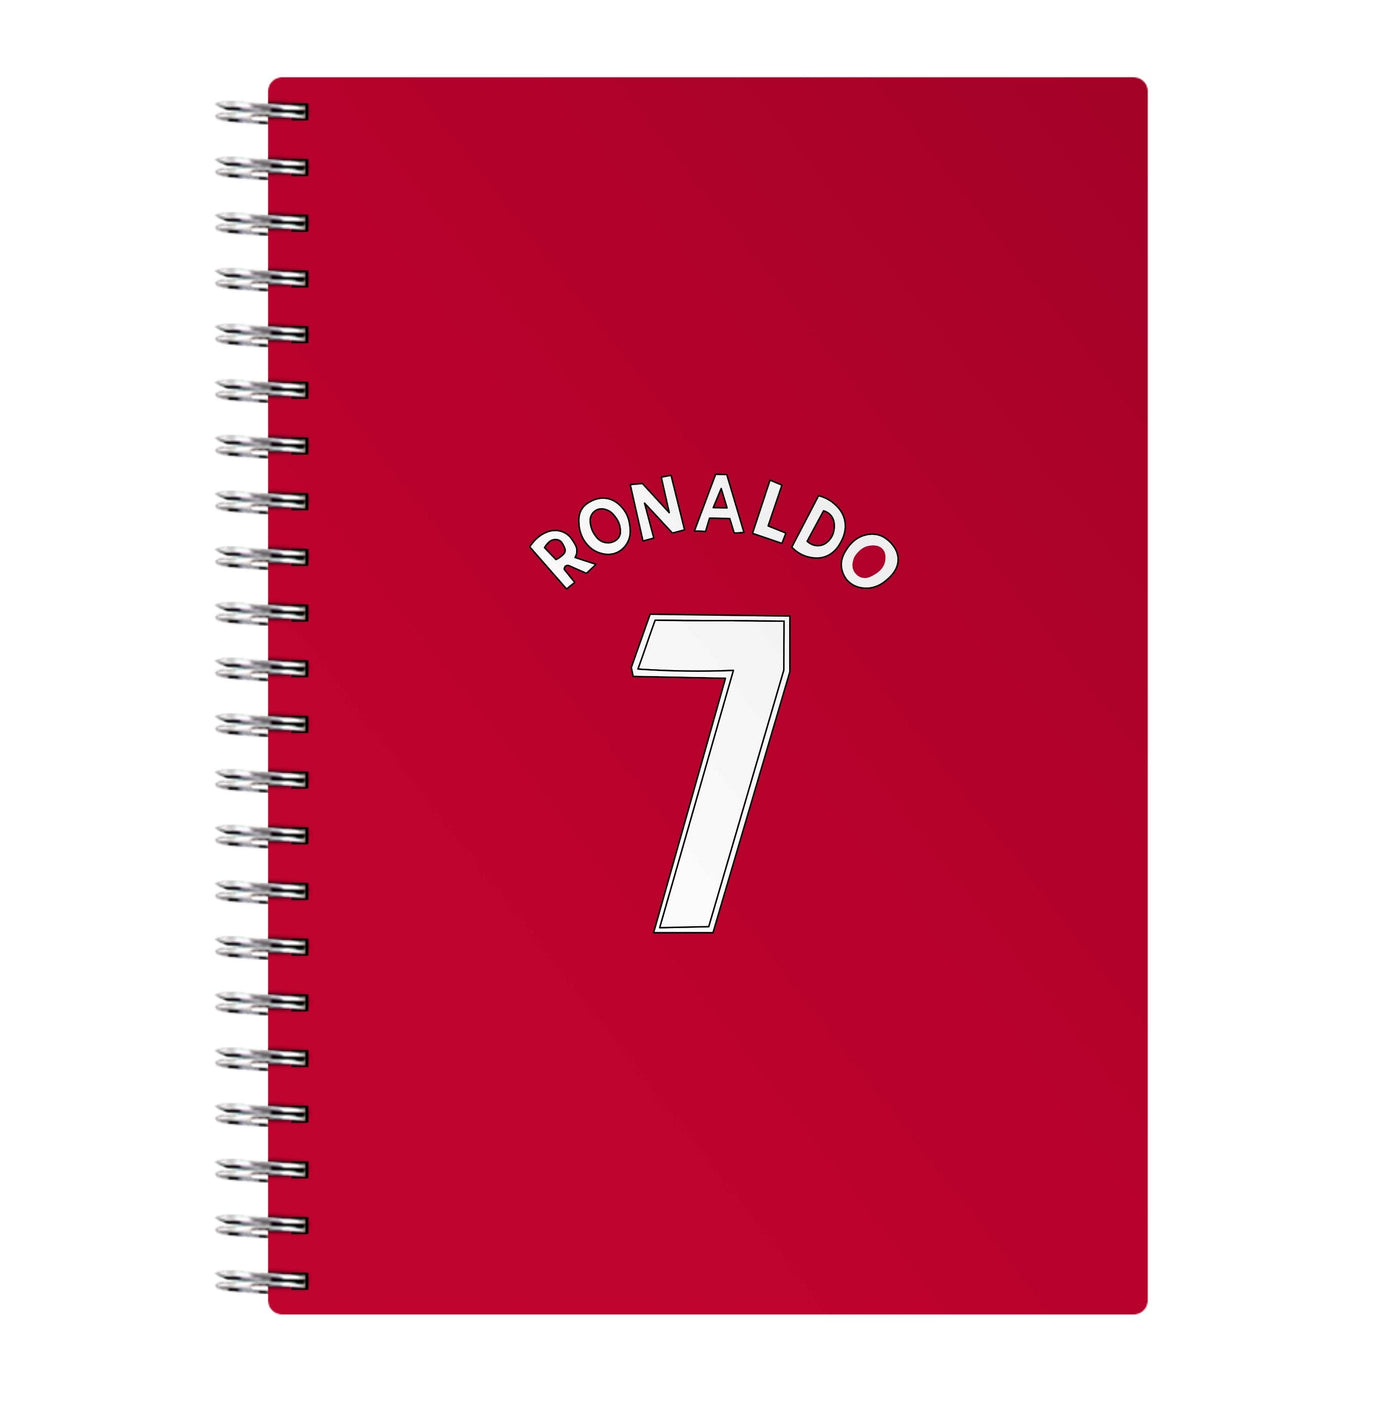 Iconic 7 - Ronaldo Notebook